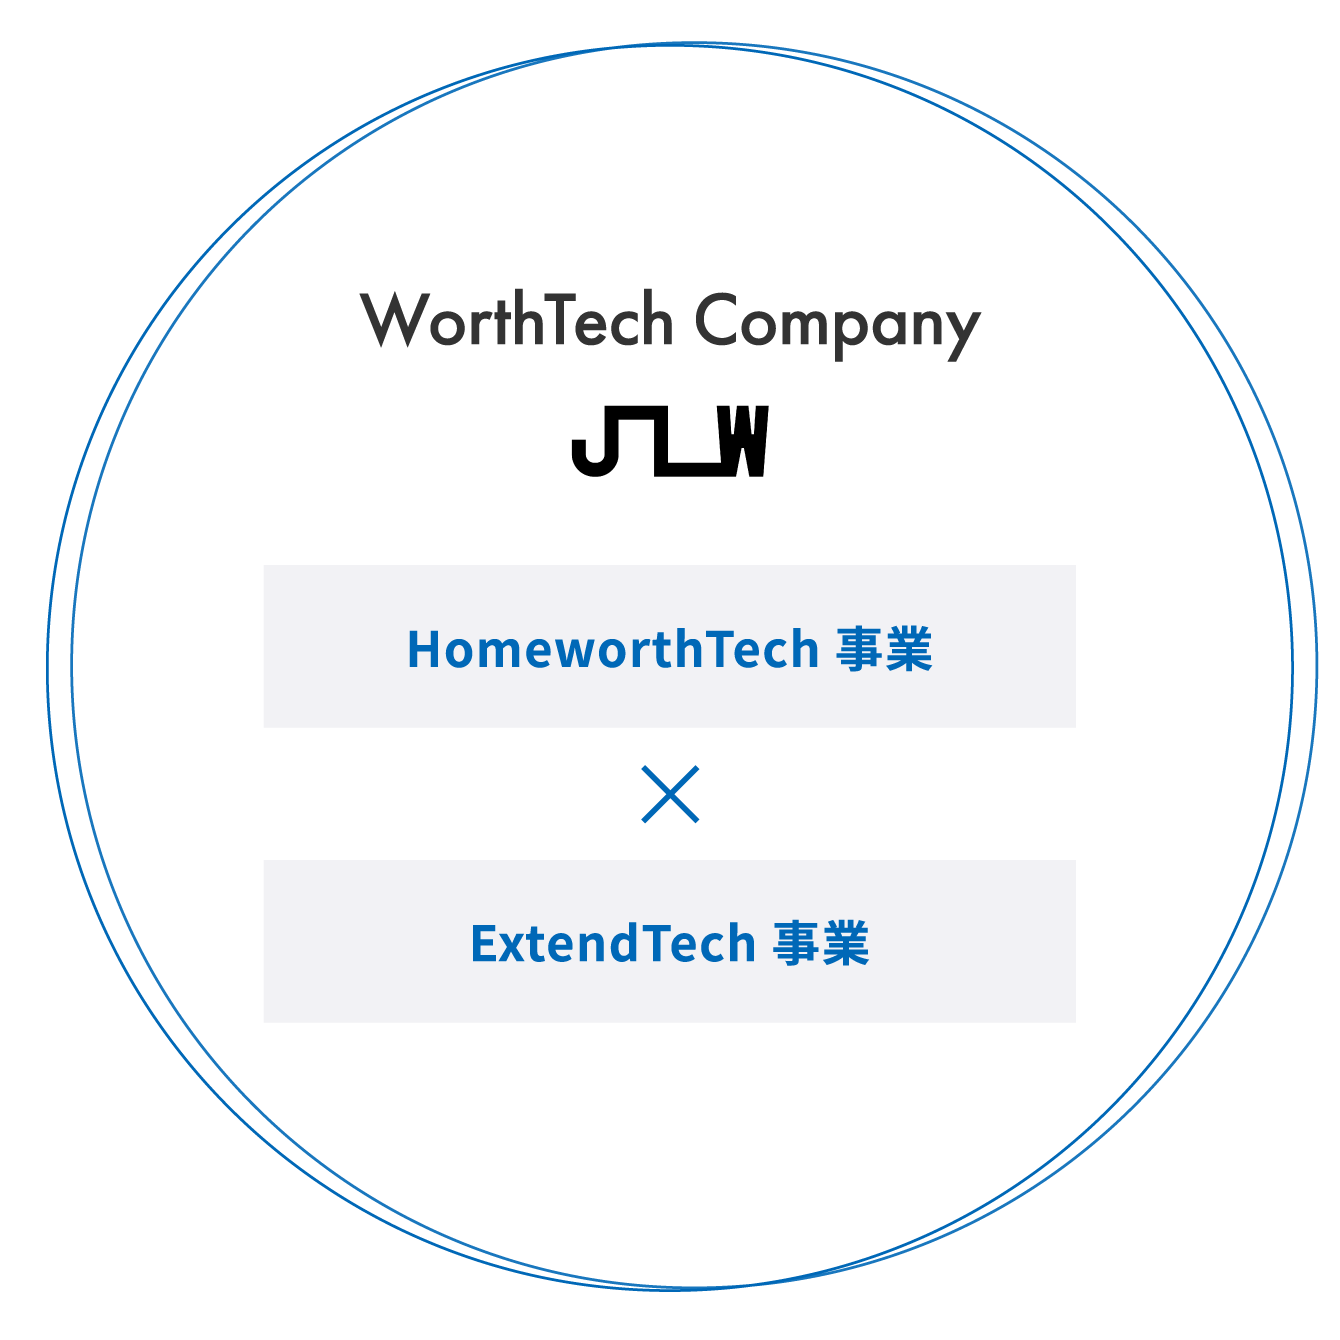 事業内容の図。私たちは、HomeworthTech事業とExtendTech事業を営むWorthTech Companyです。